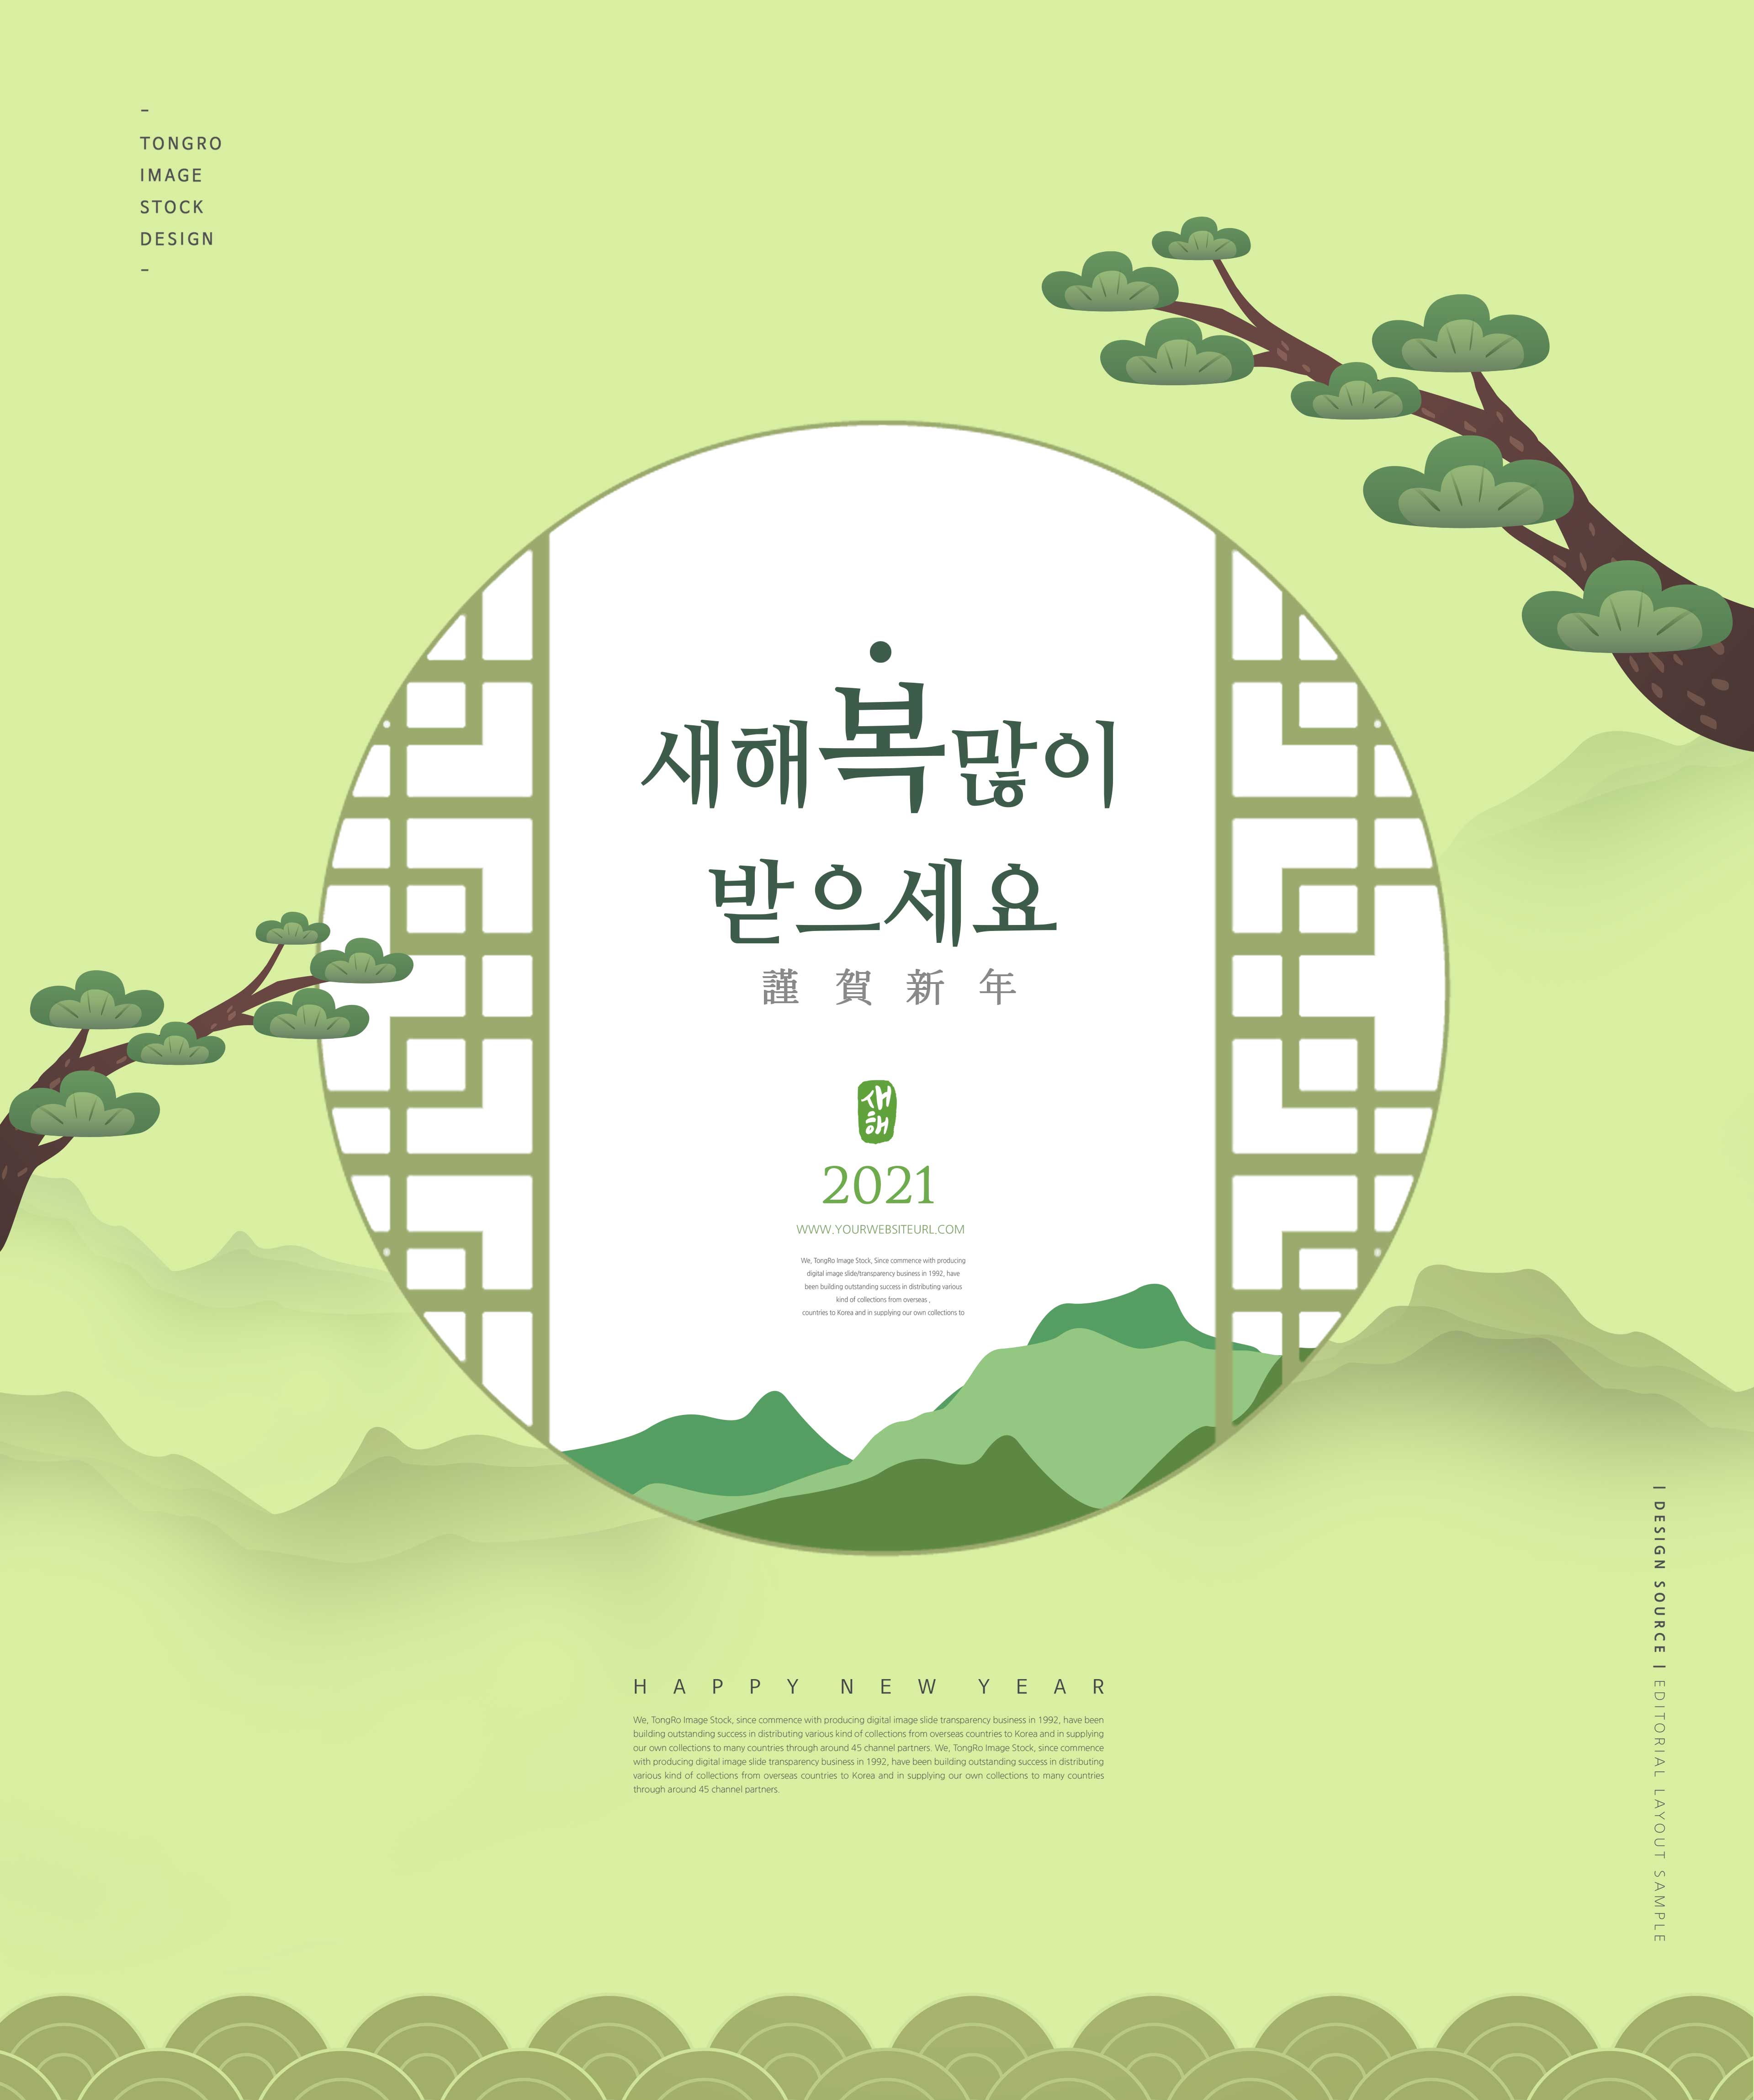 恭贺新年海报复古圆窗设计韩国素材设计素材模板